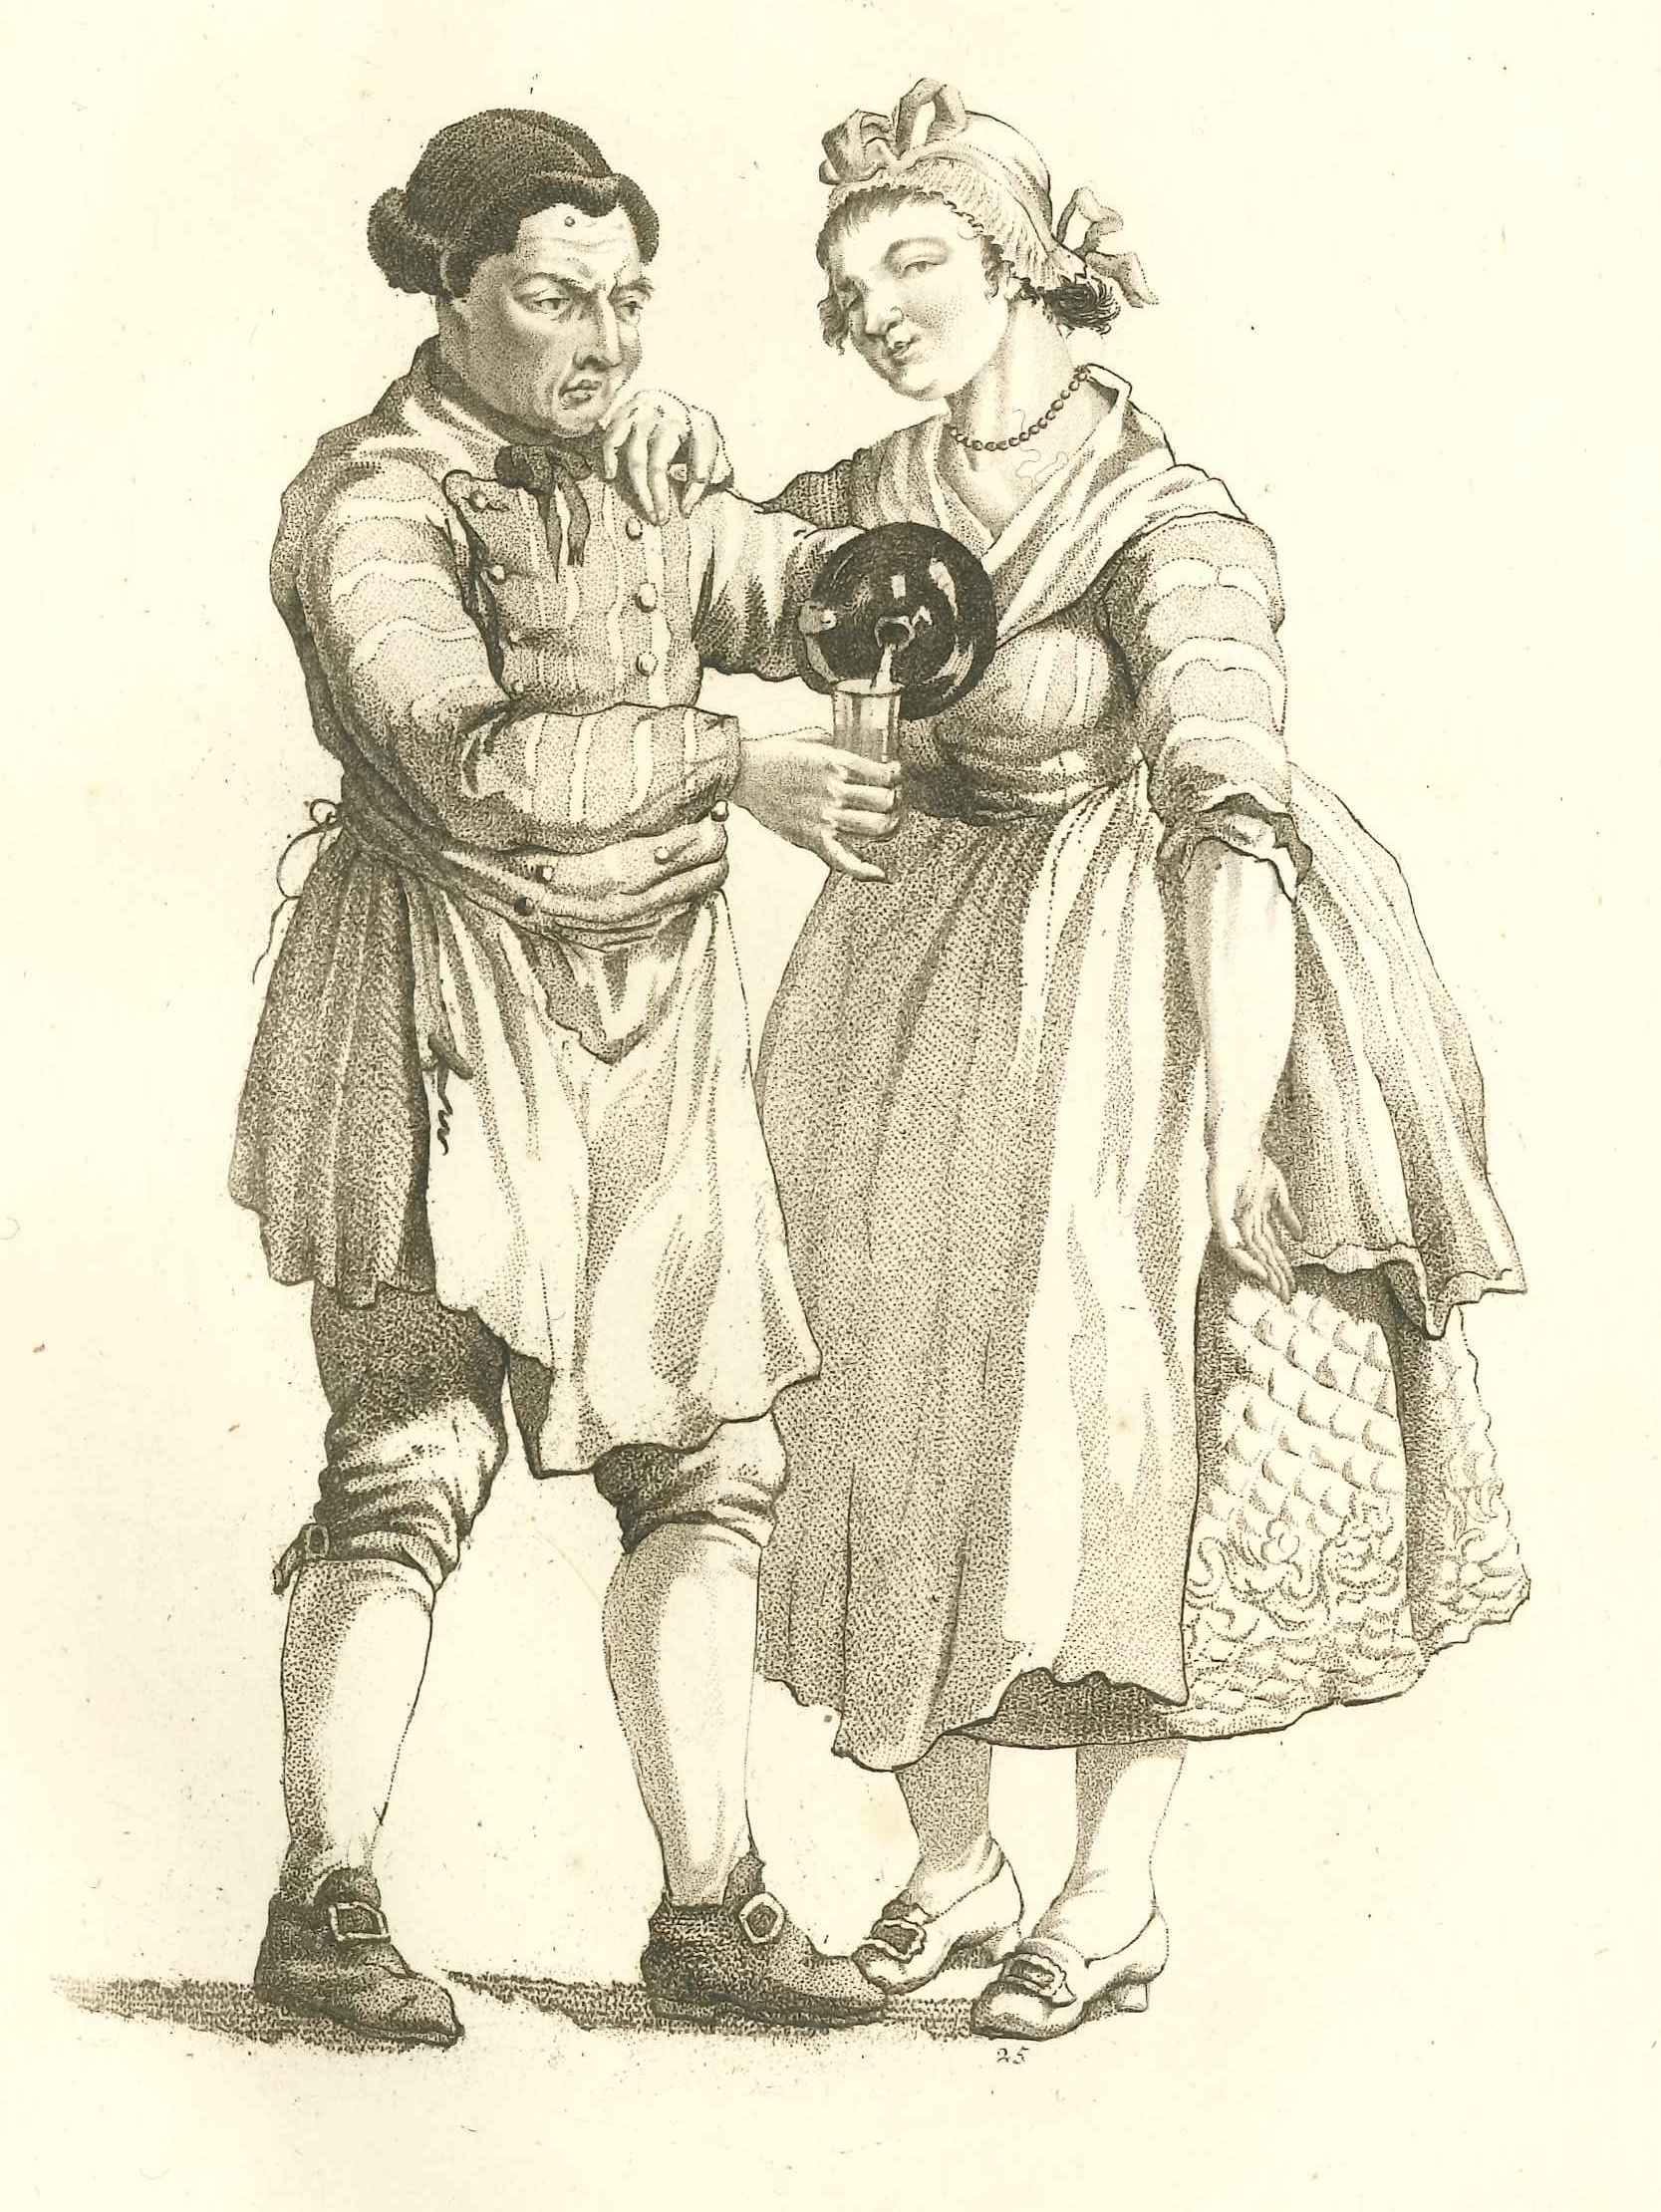 Herbergier schenkt glas in, ca. 1800.